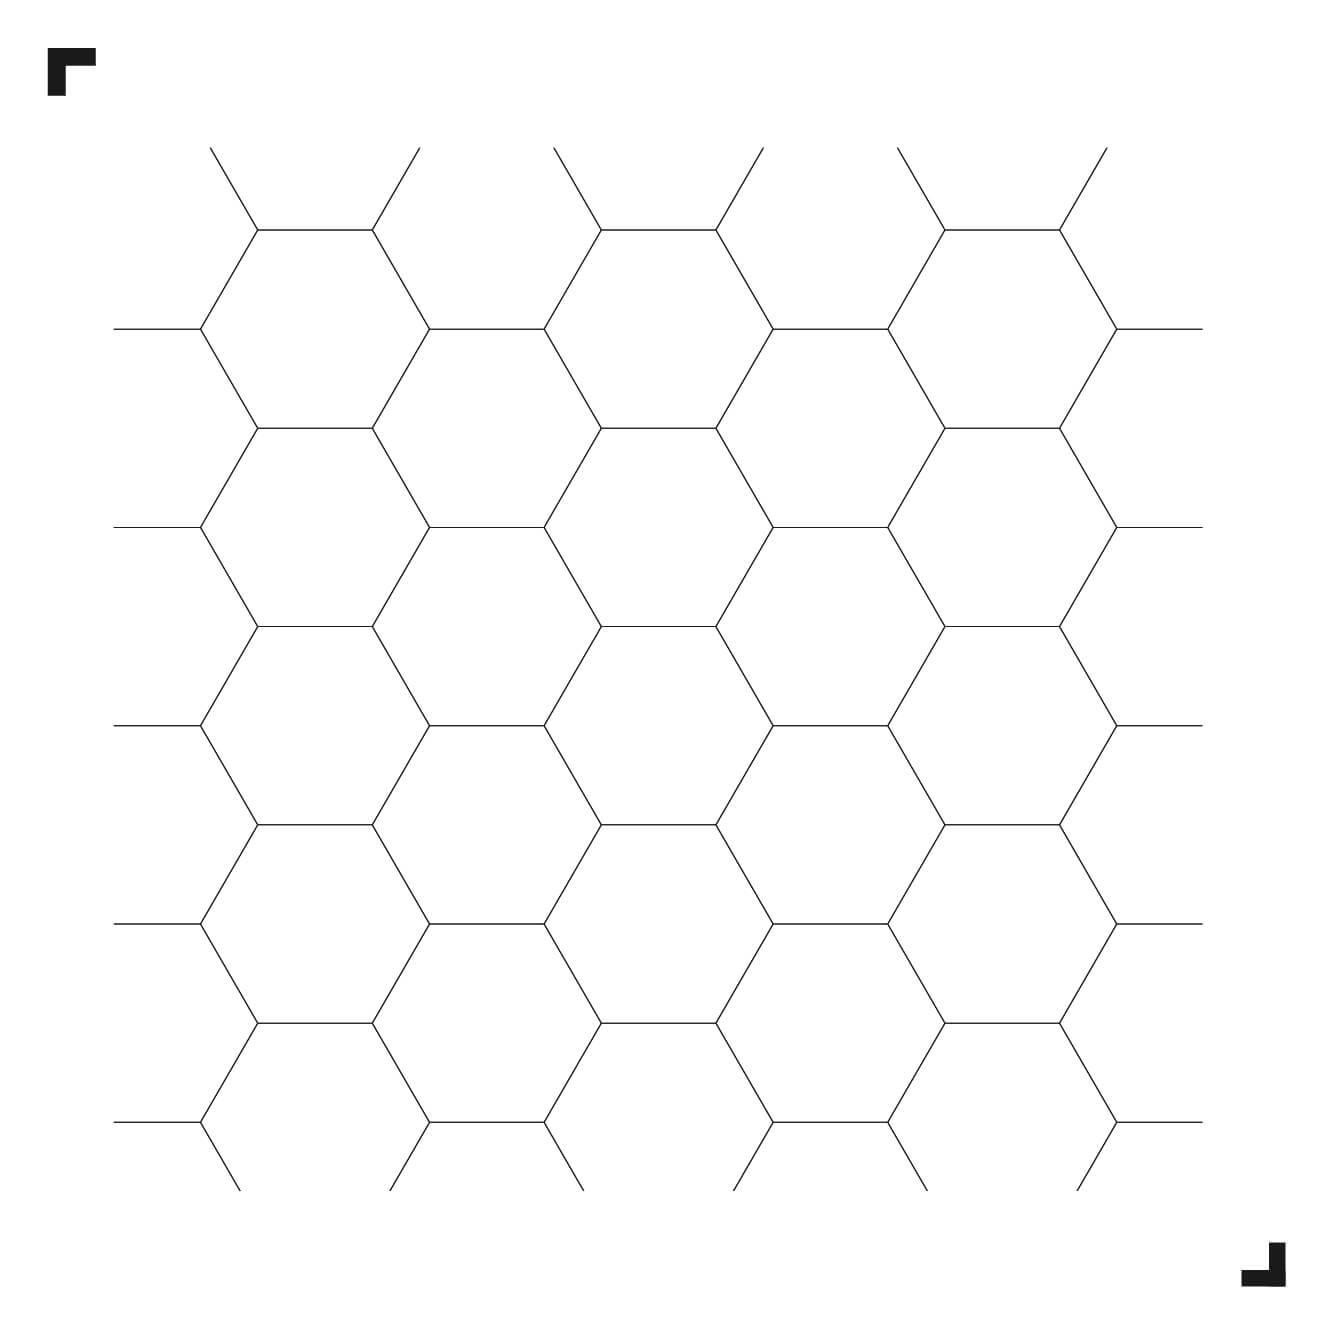 Schwarz-Weiß-Zeichnung des Big Hexagon-Musters - Moduleo Moods - Luxury Vinyl Tiles - Creative flooring